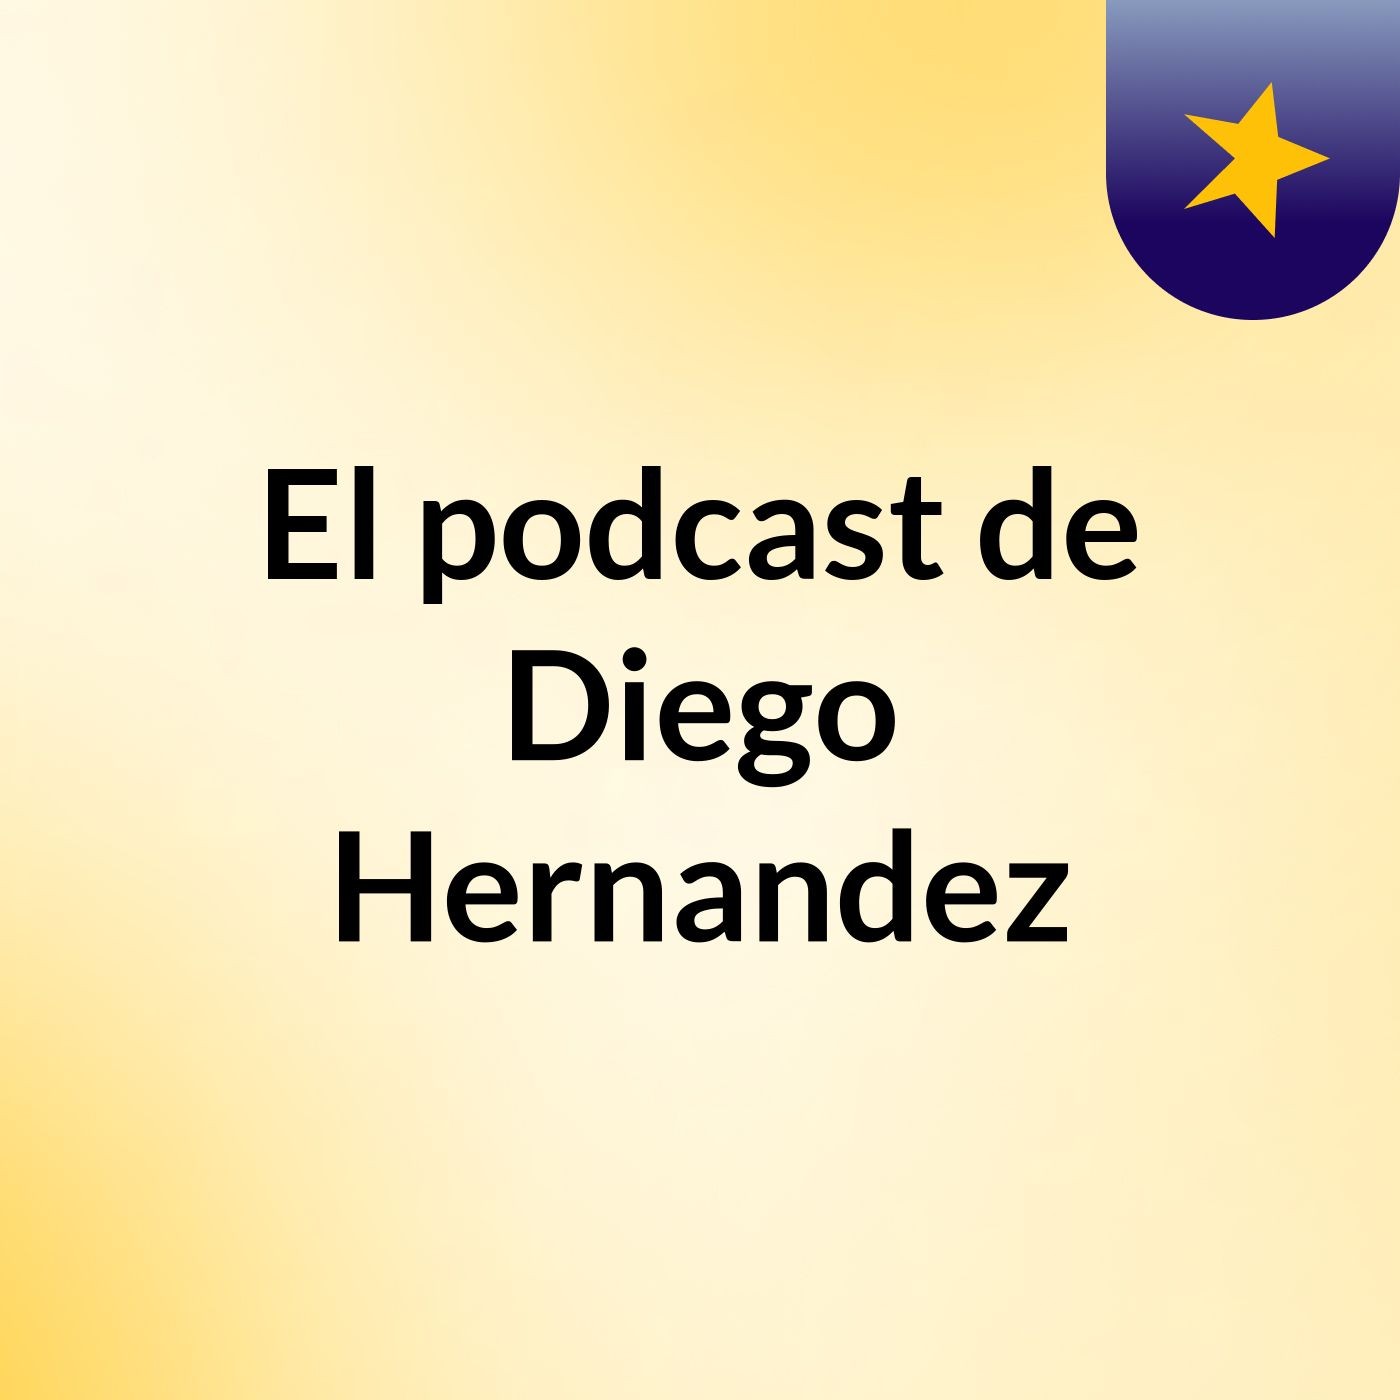 El podcast de Diego Hernandez